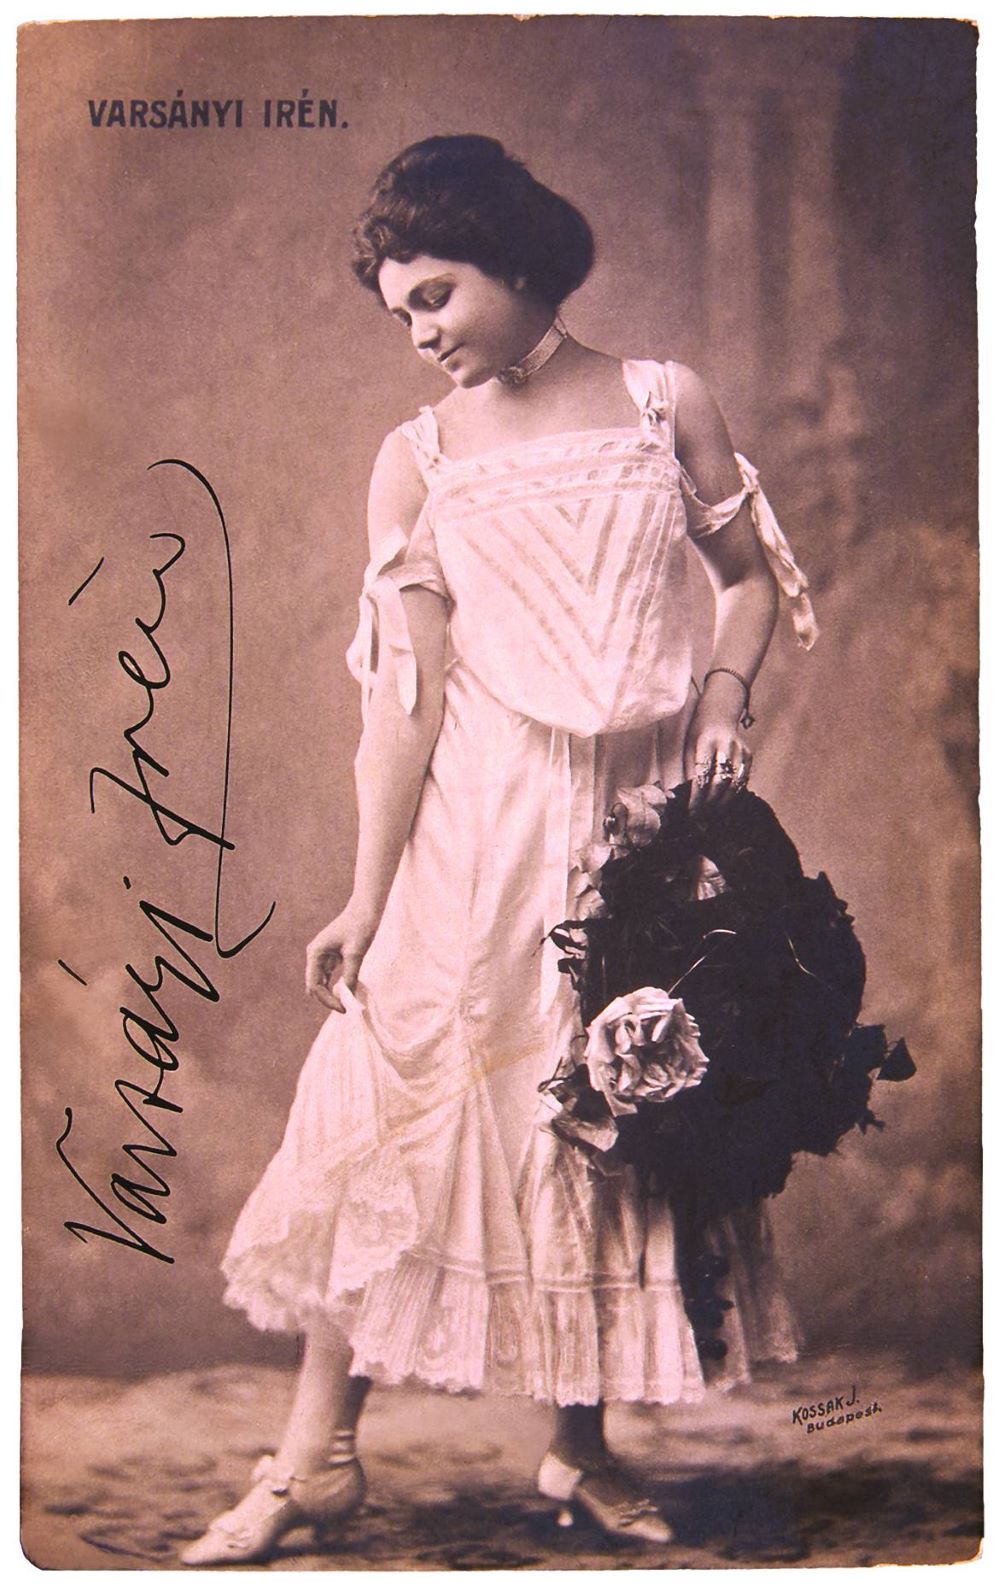 Varsányi Irén Feydeau Mici hercegnő című bohózatának címszerepében, 1903. (Vígszínház) Kossak felvétele, levelezőlap